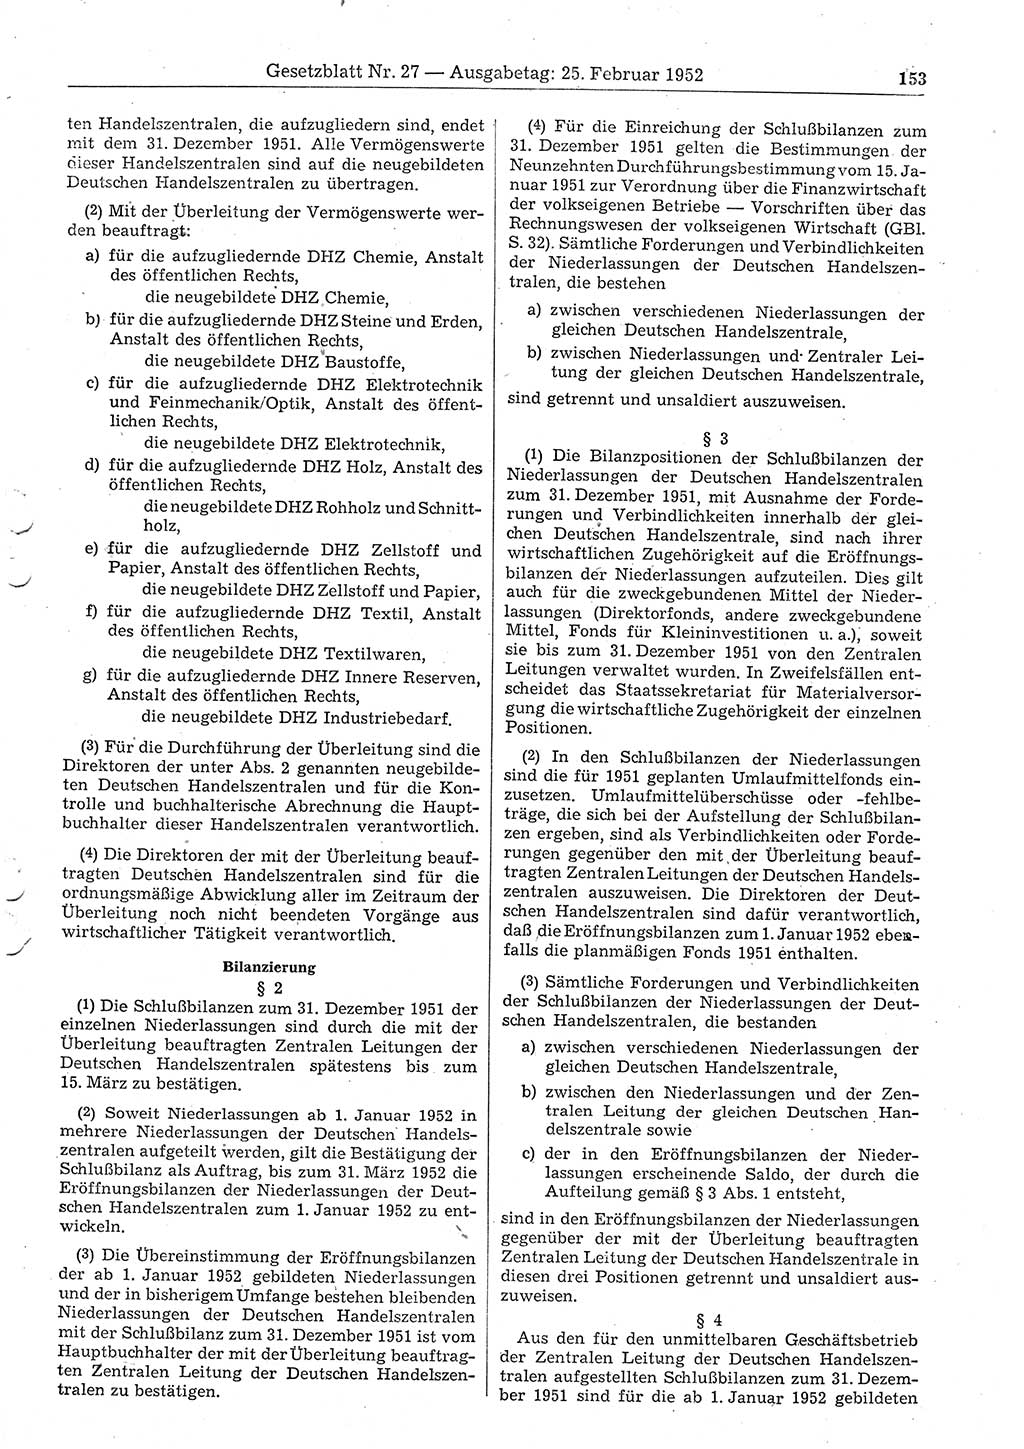 Gesetzblatt (GBl.) der Deutschen Demokratischen Republik (DDR) 1952, Seite 153 (GBl. DDR 1952, S. 153)